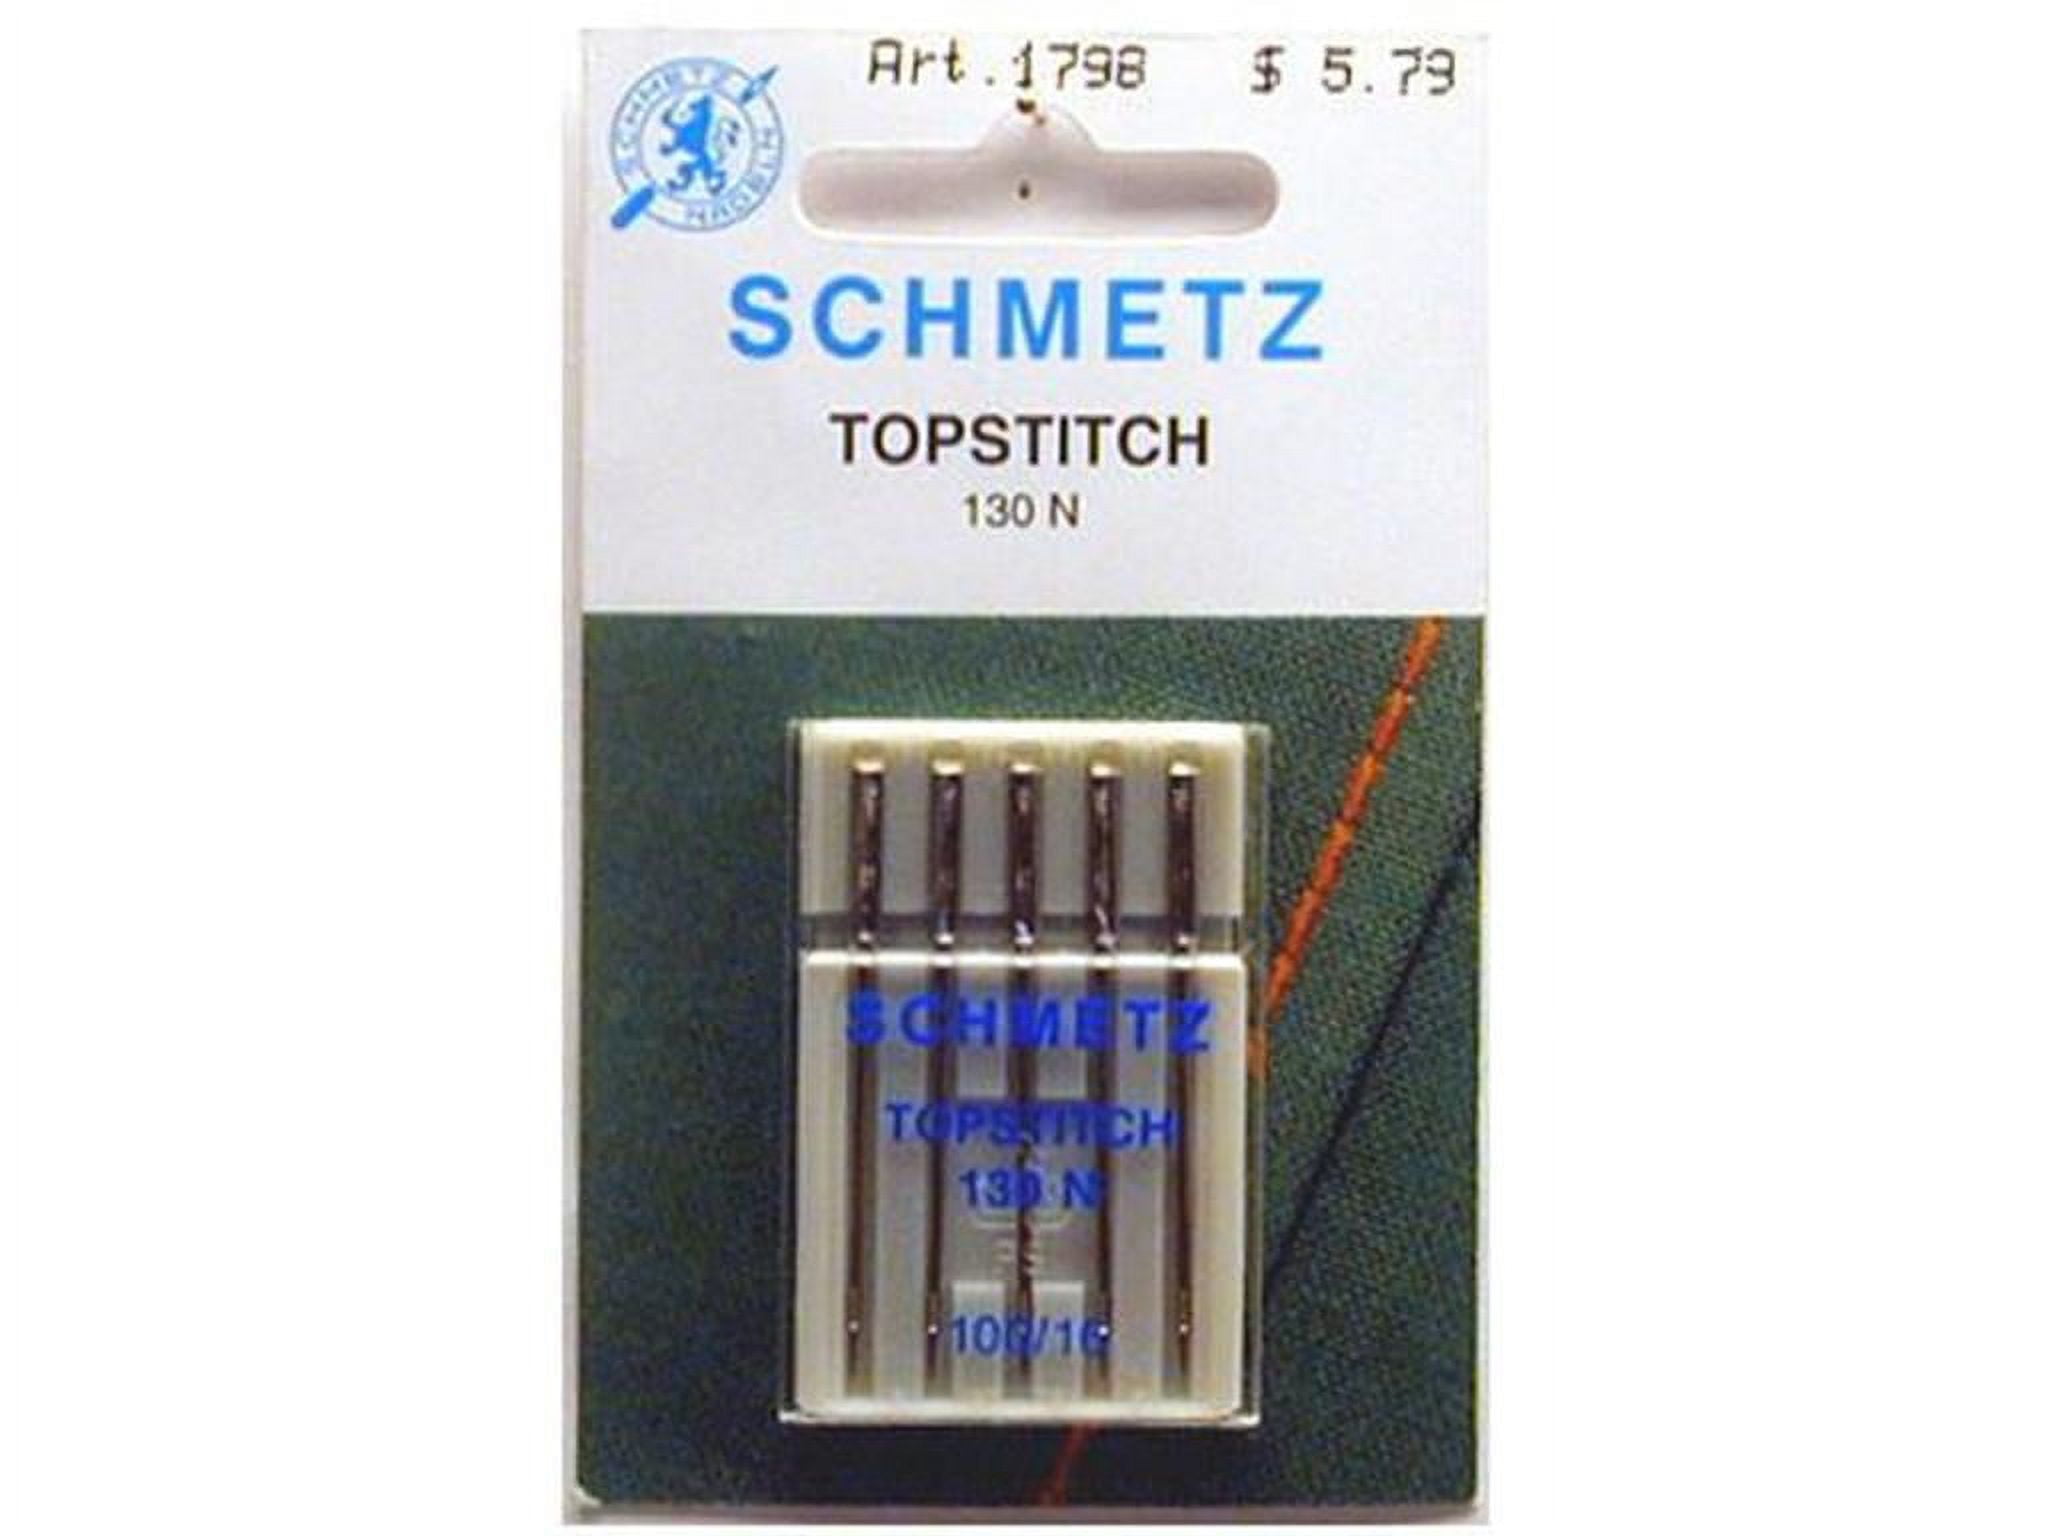 Schmetz Topstitch Needles, Size 100/16